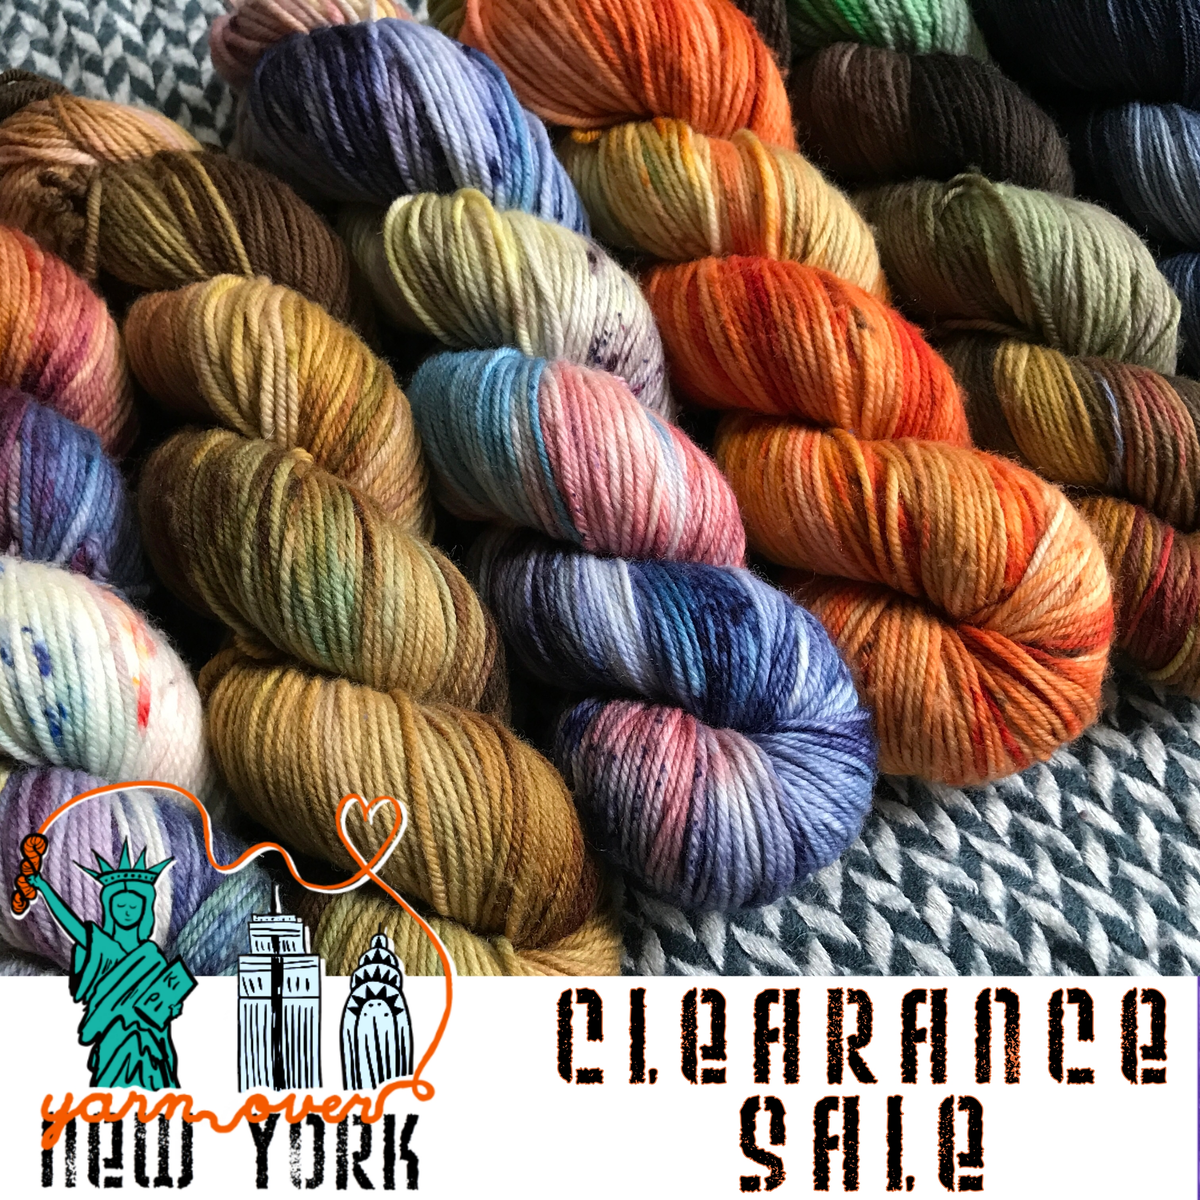  Clearance Sale Yarn